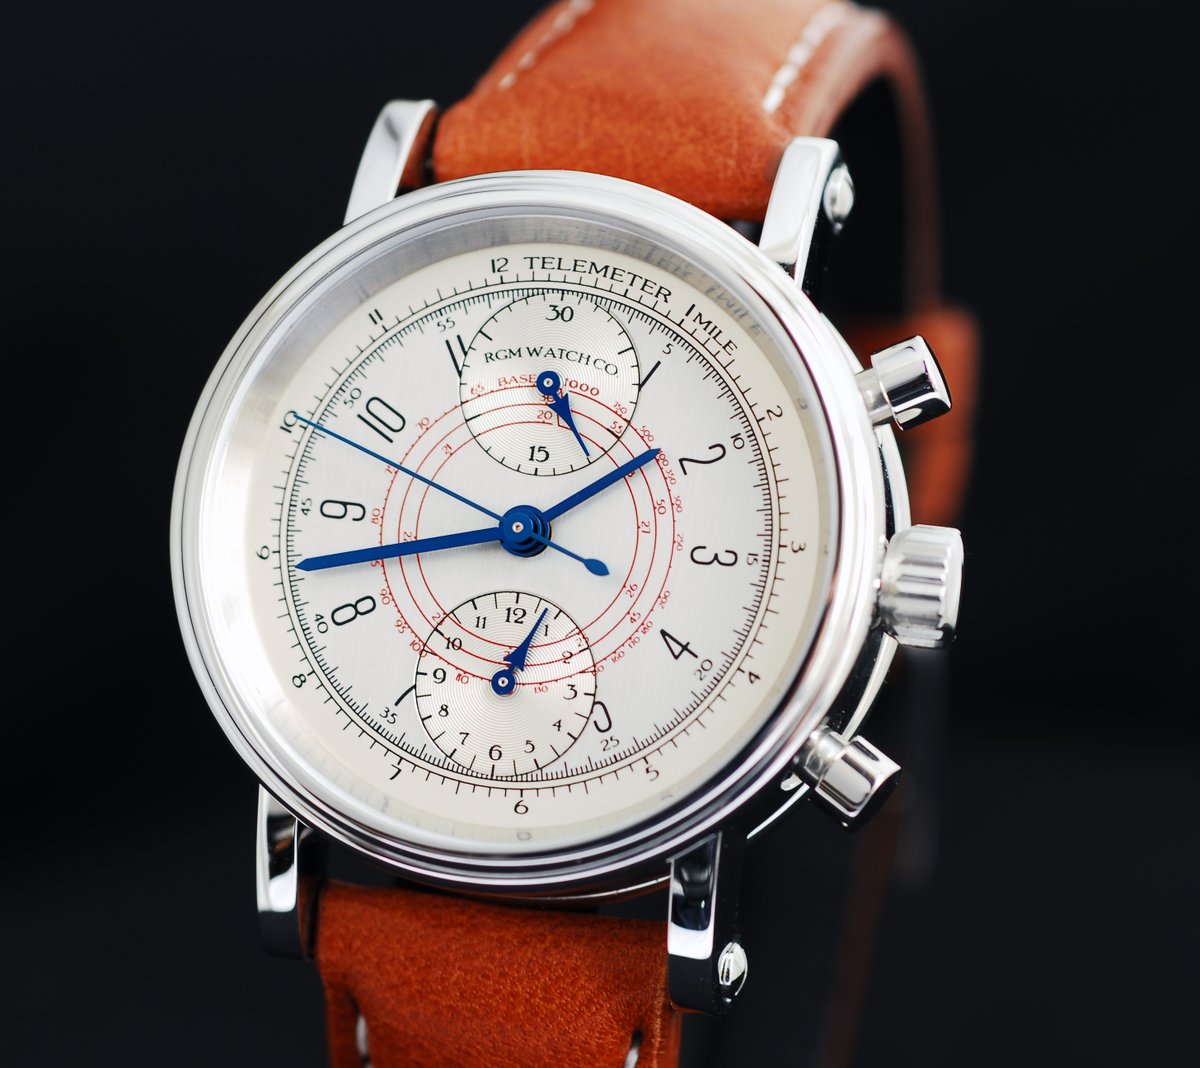 RGM Model 455-R Chronograph.

#rgmwatchco #rgmwatches #rgmwatch #watch #watches #wristwatch #wristwatches #watchmaking #watchmaker #independentwatchmaking #independentwatchmaker
#chronographwatch #chronographwatches